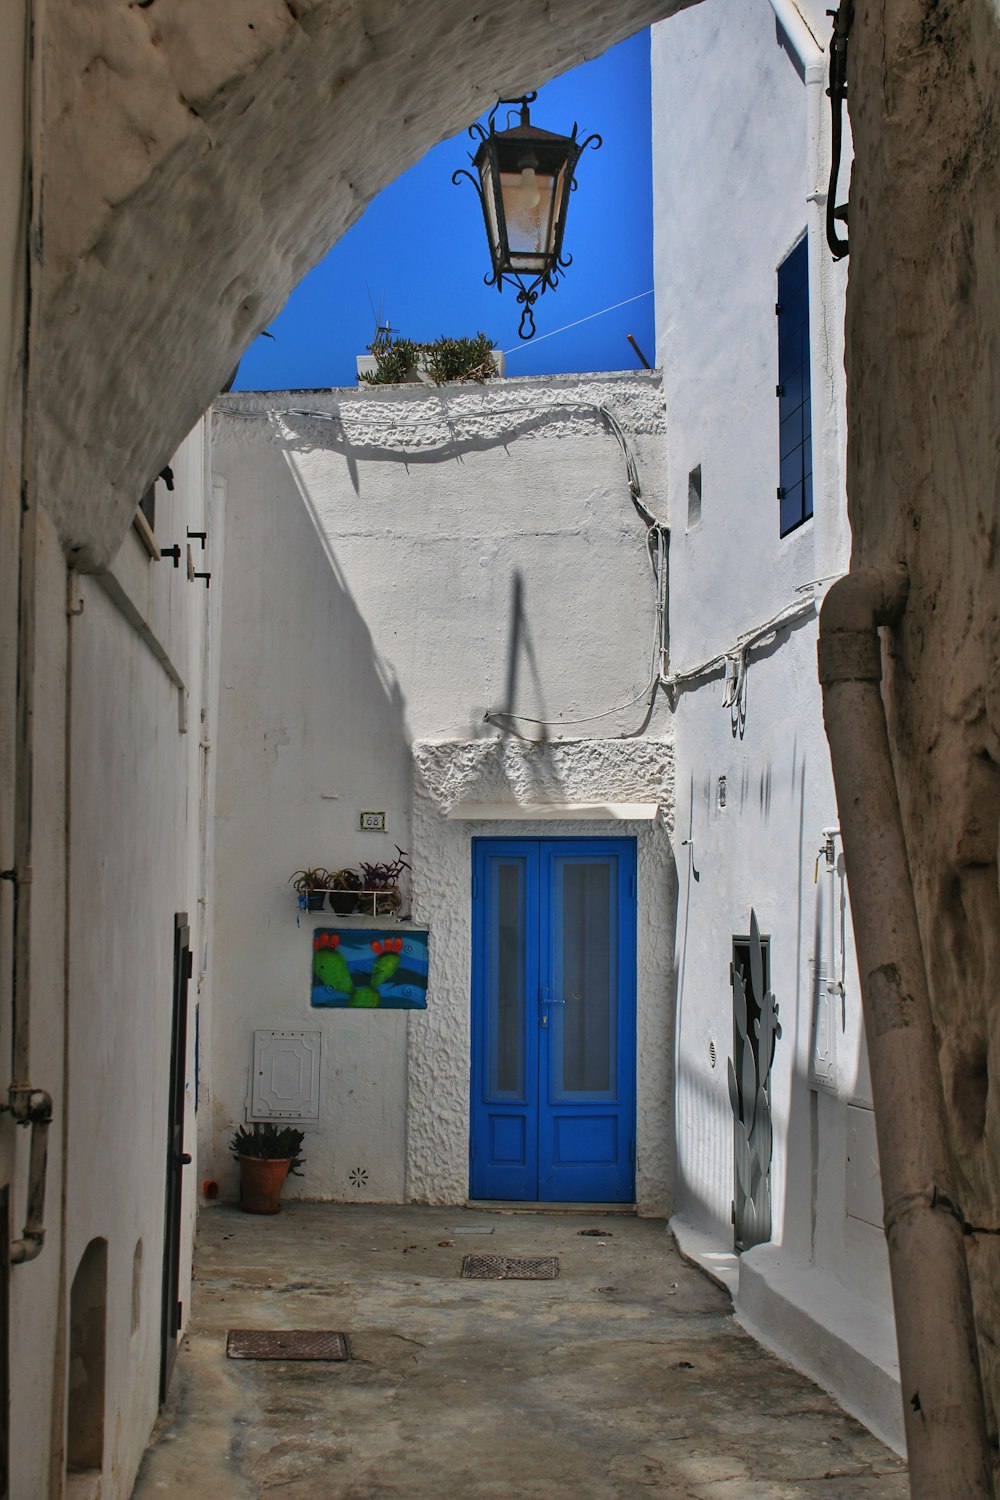 a narrow alleyway with a blue door